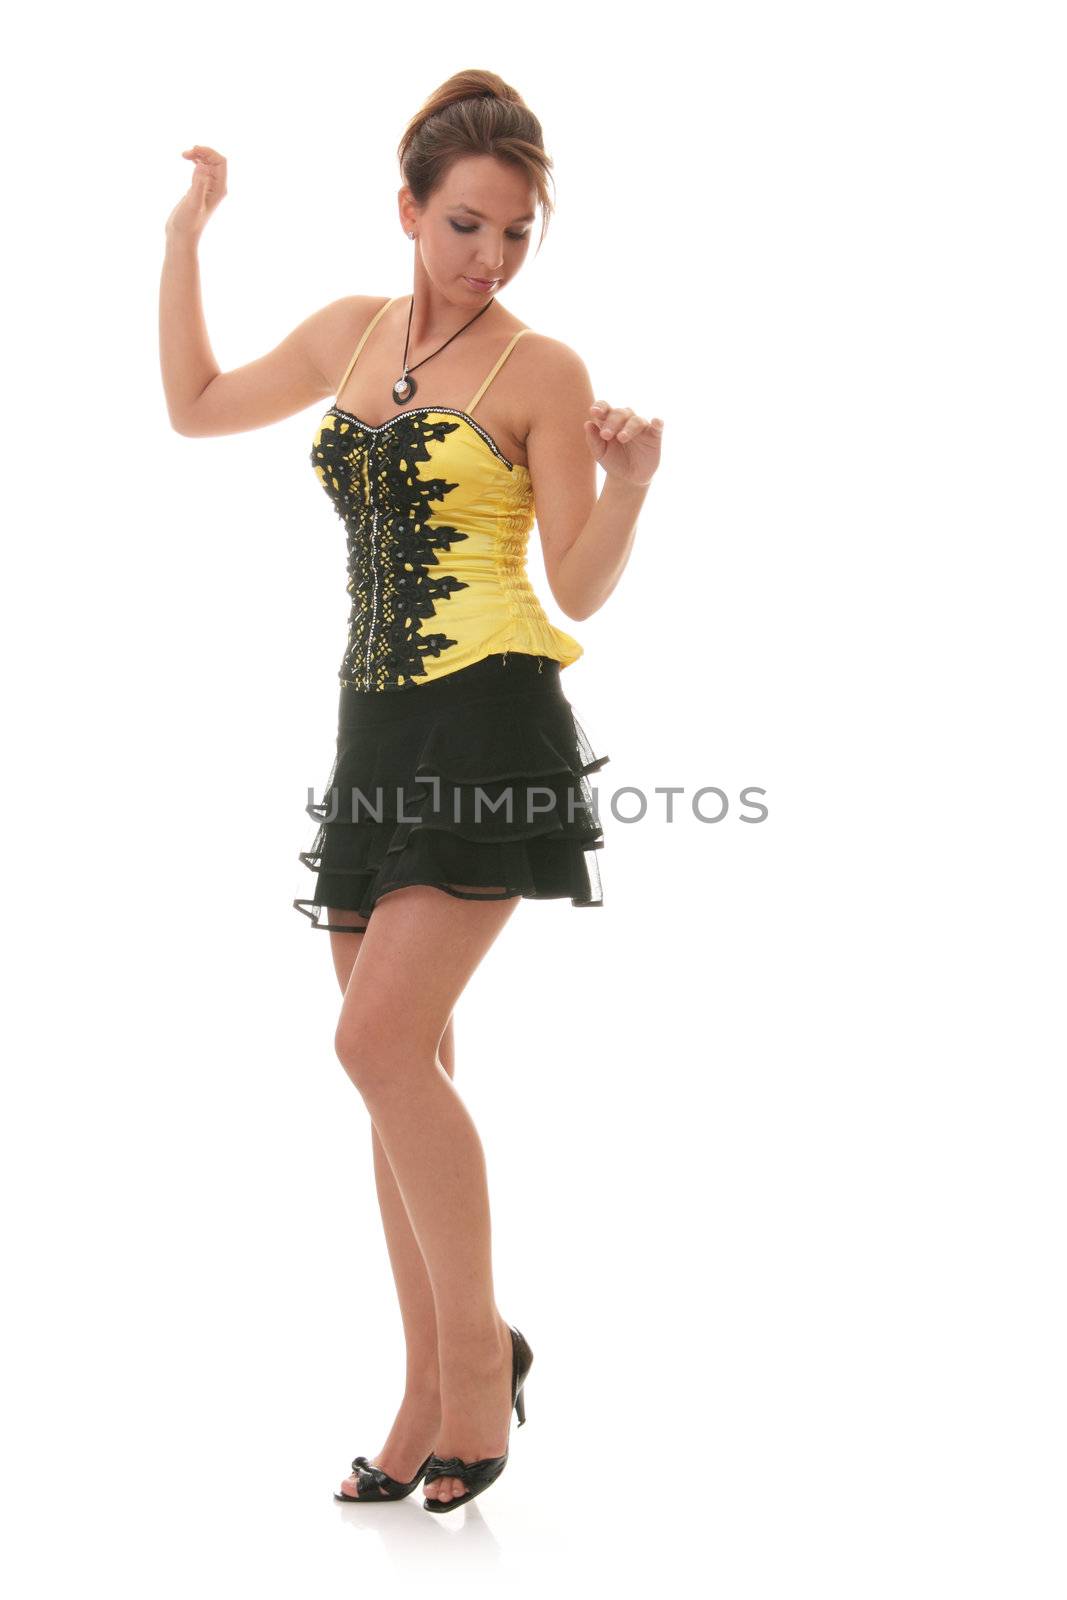 Sweet young woman (teenage girl) in yellow/black dress